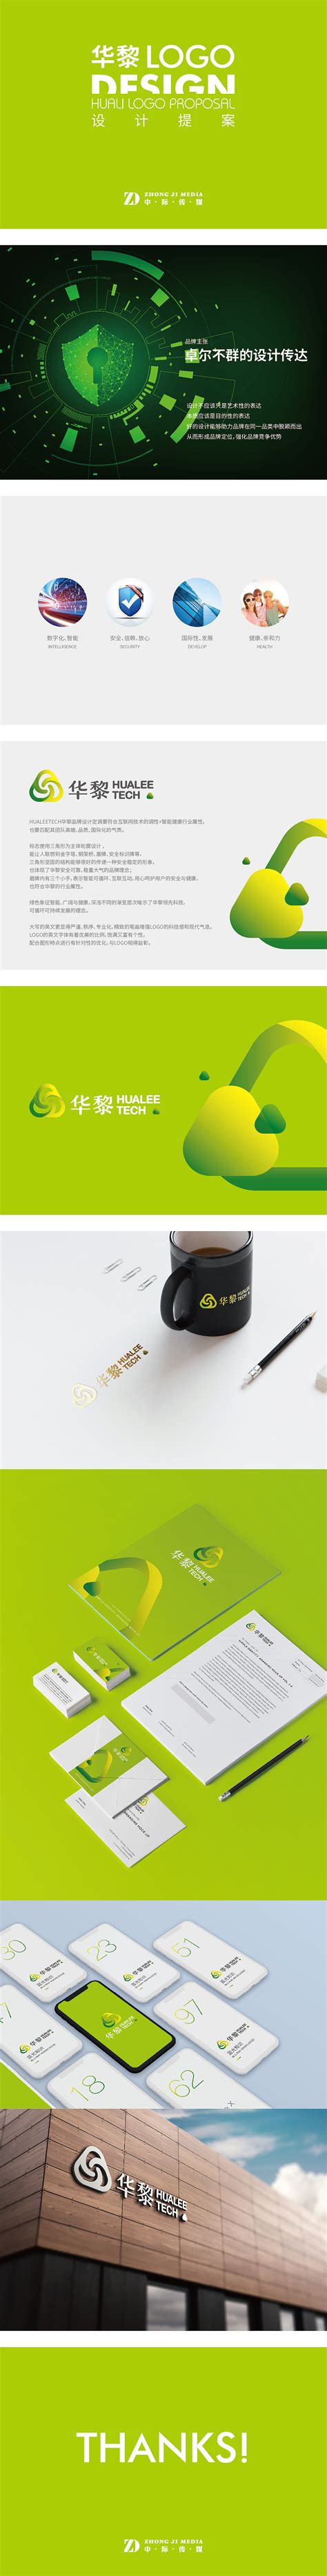 青岛旅游品牌青岛经典标志logo设计理念和寓意_设计公司是哪家 -艺点创意商城